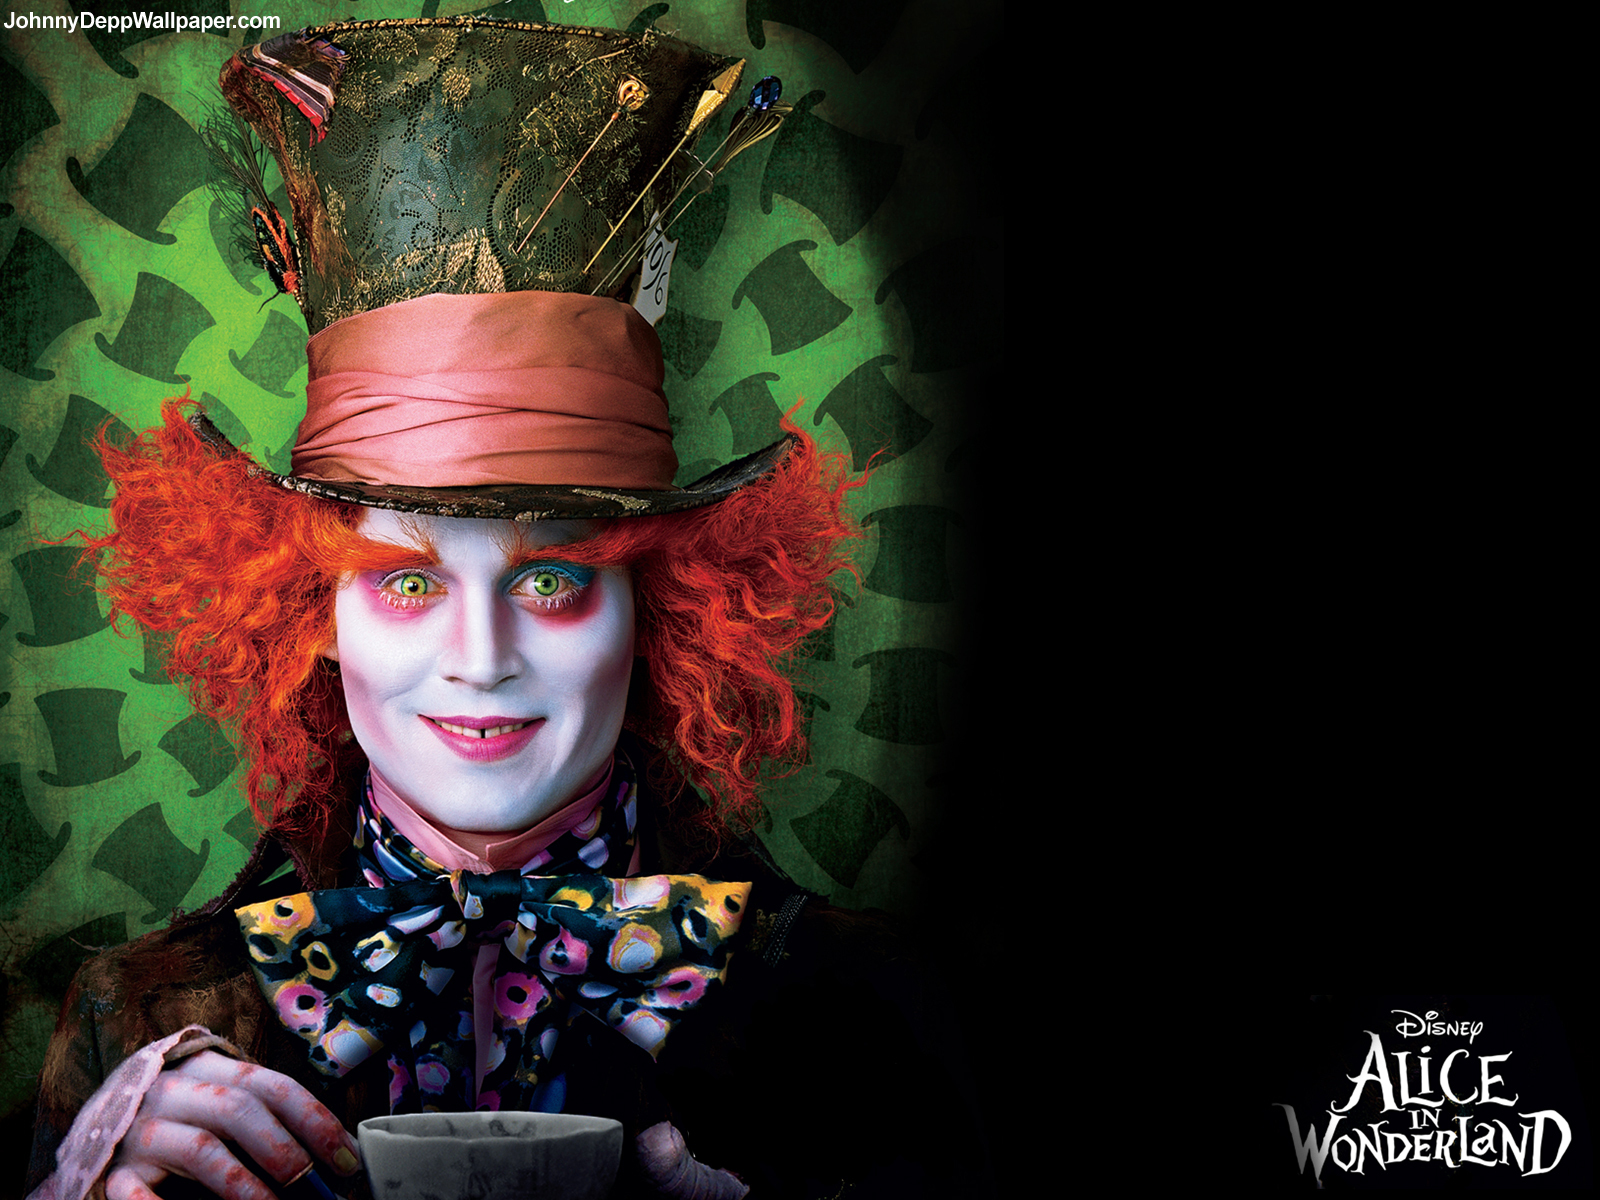 Johnny Depp Wallpaper Alice In Wonderland